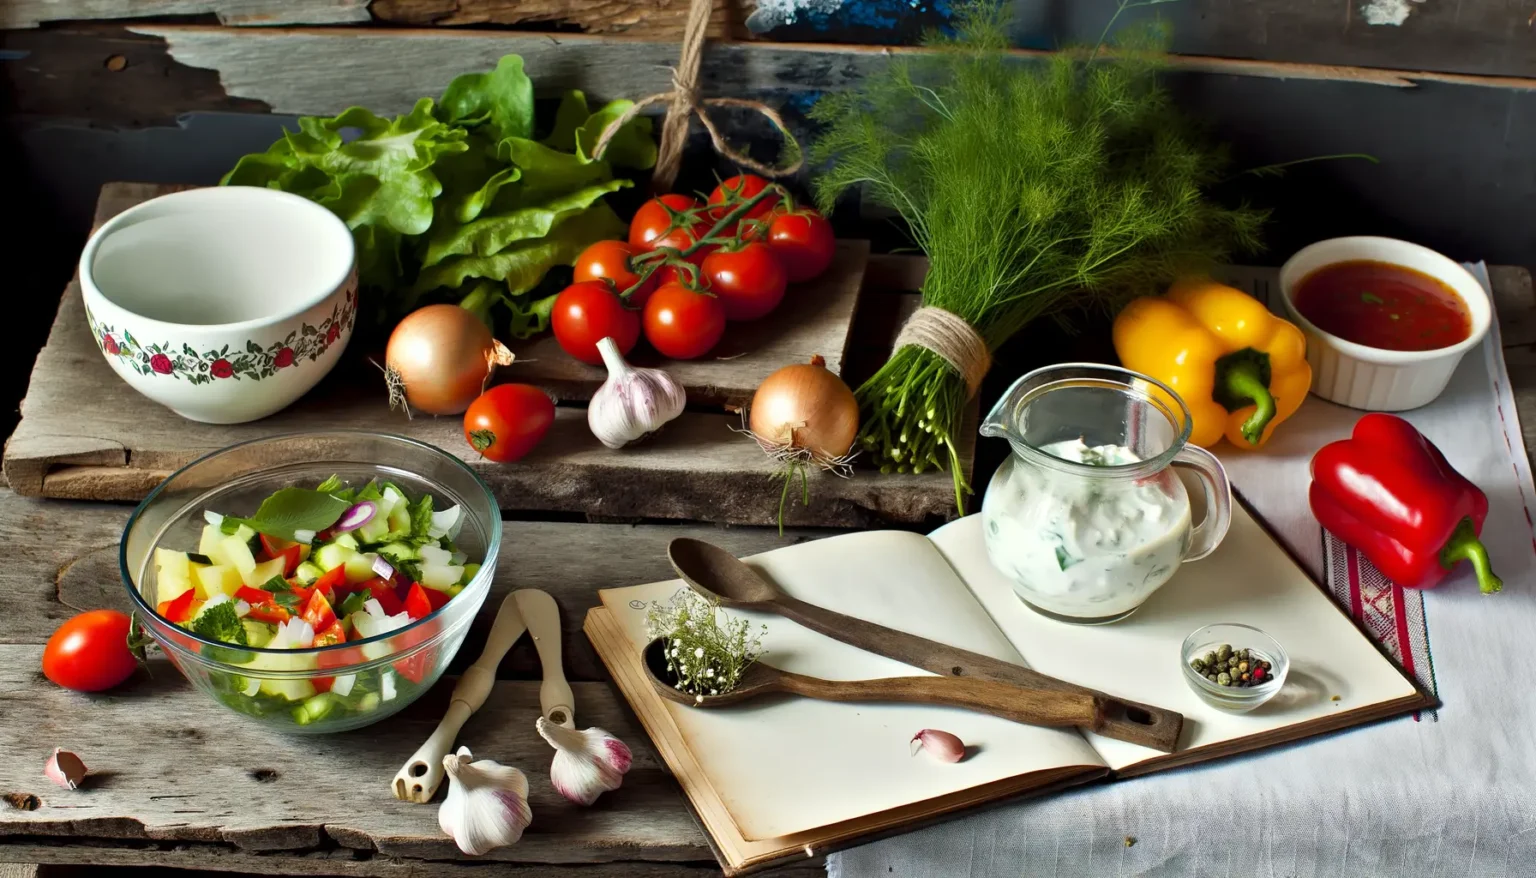 Eine rustikale Küchenarbeitsfläche mit frischen Zutaten für einen Salat. Im Vordergrund befindet sich eine Schale mit geschnittenem Gemüse, umgeben von einzelnen Tomaten und Knoblauchzehen. Ein Bund Dill, eine gelbe und rote Paprika, eine Schüssel mit Blumendekor, ein Glas Kräuterjoghurt, eine Flasche mit Flüssigkeit und ein Topf mit roter Sauce ergänzen das Bild rechts. Links liegen eine Zwiebel und ein offenes Buch mit einem Holzlöffel und Kräutern auf den Seiten. Das Bild strahlt Hausgemachtes und frische Küche aus.